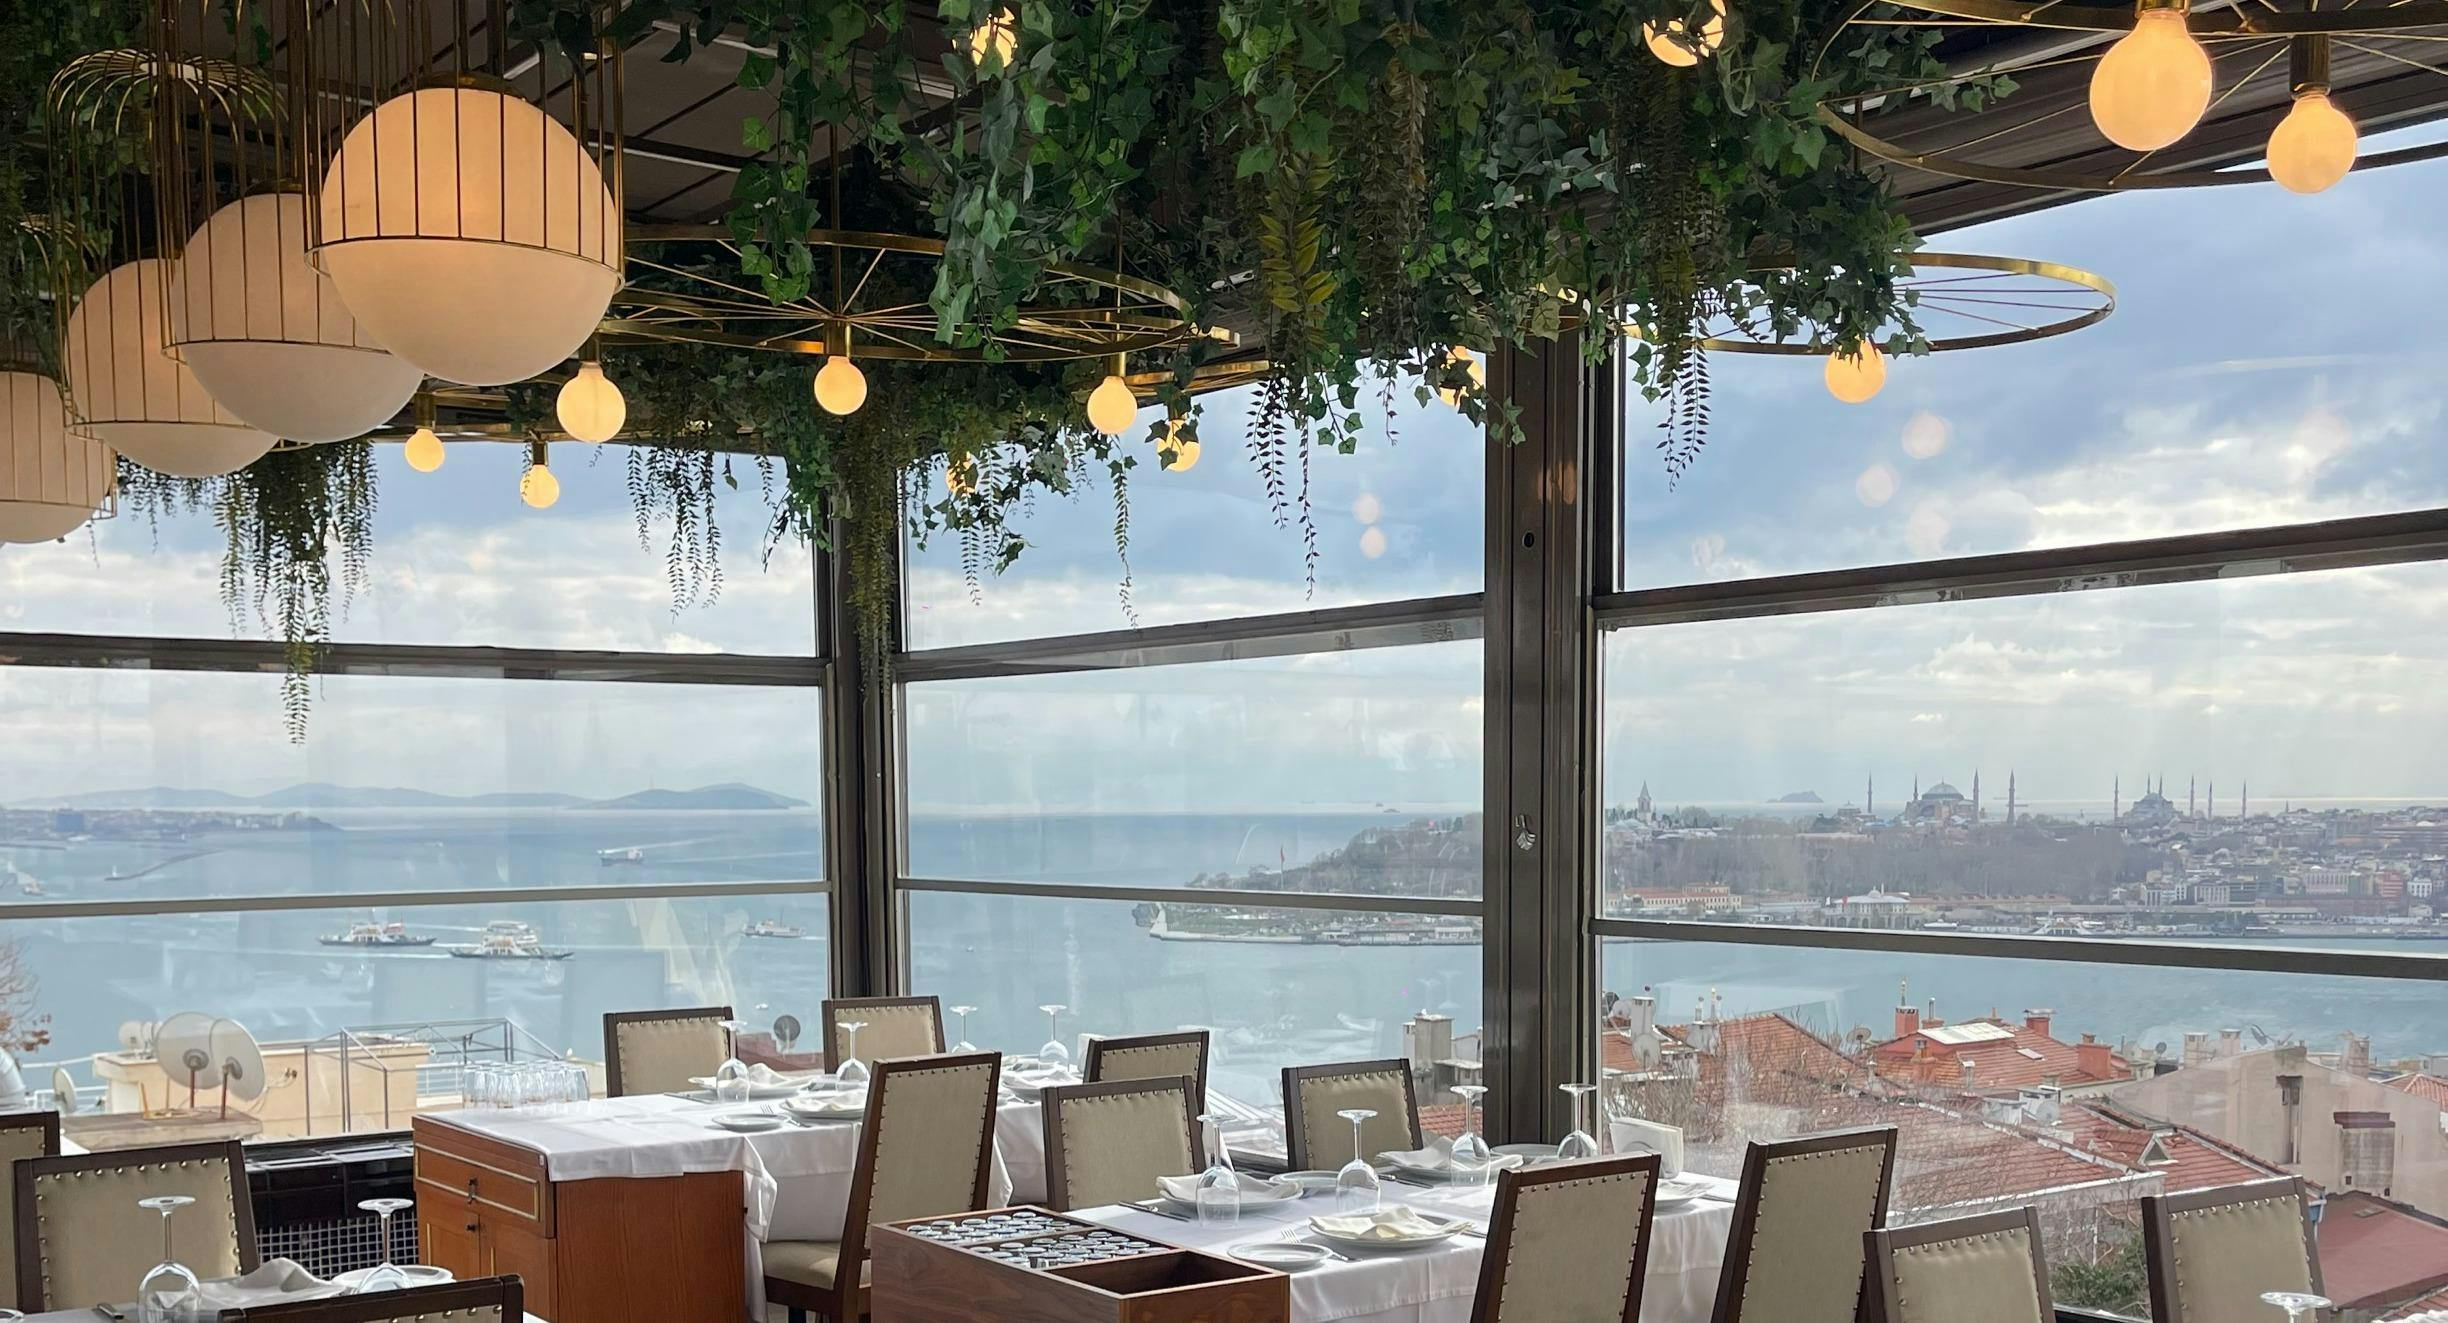 Beyoğlu, Istanbul şehrindeki Sur Balık Cihangir restoranının fotoğrafı